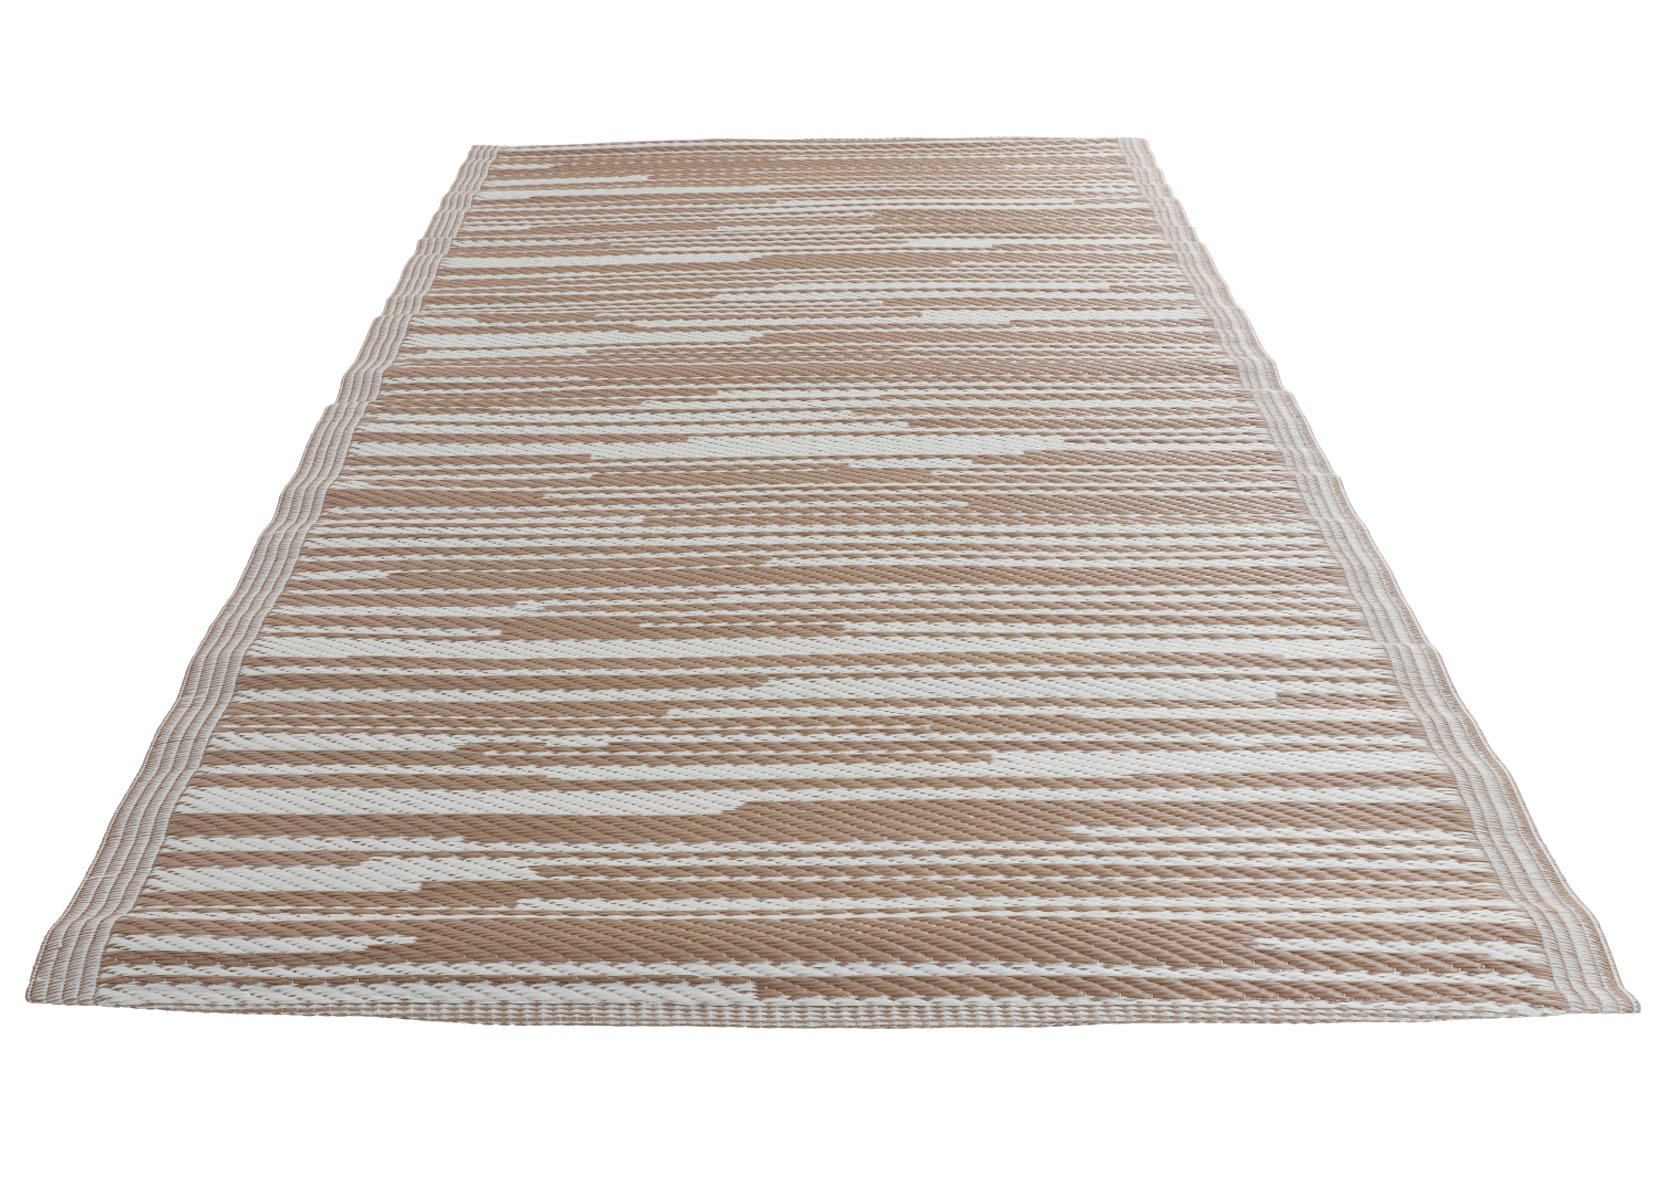 Outdoor-Teppich Streifen 180x120cm Hellbraun/Weiß